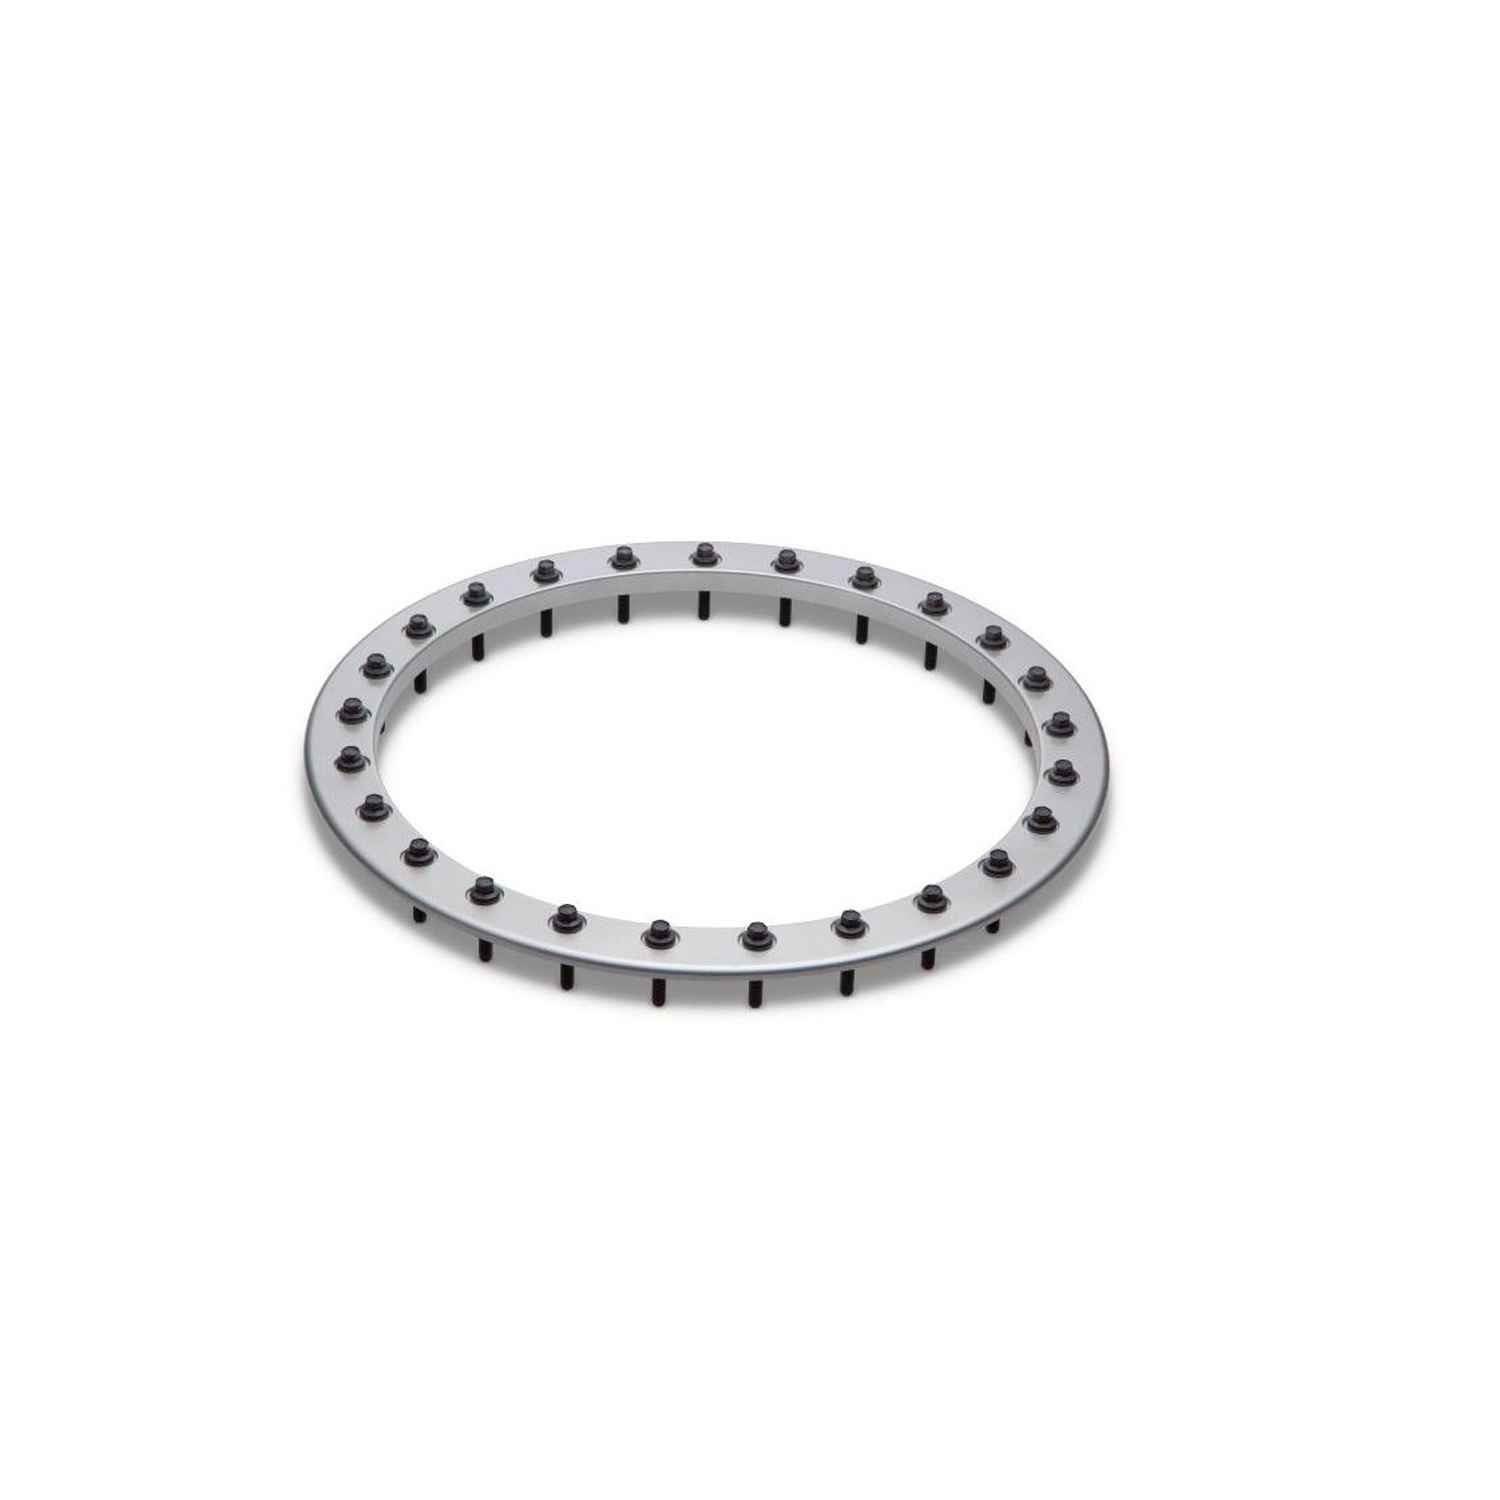 Functional Bead Lock Ring Kit